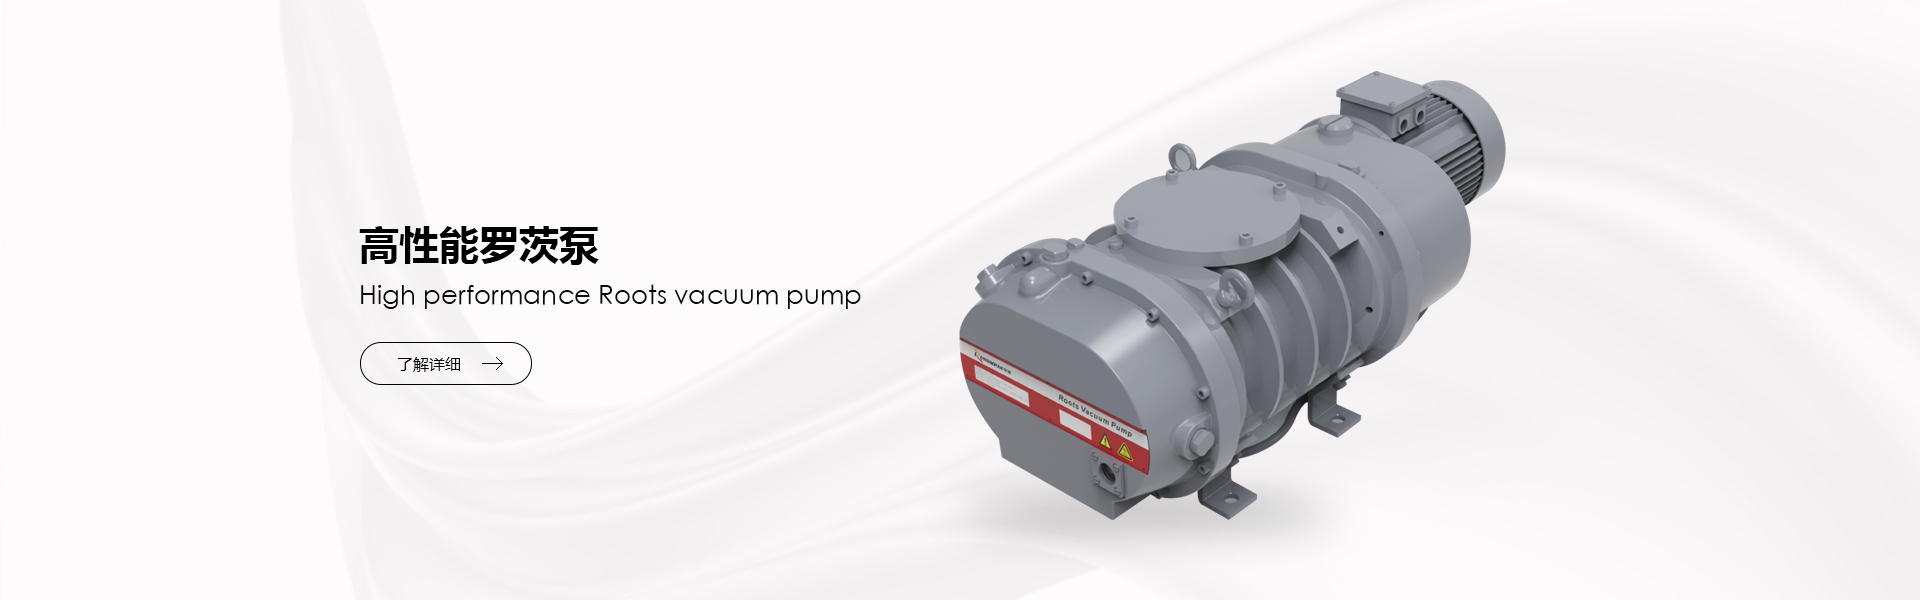 Vacuum pump 275